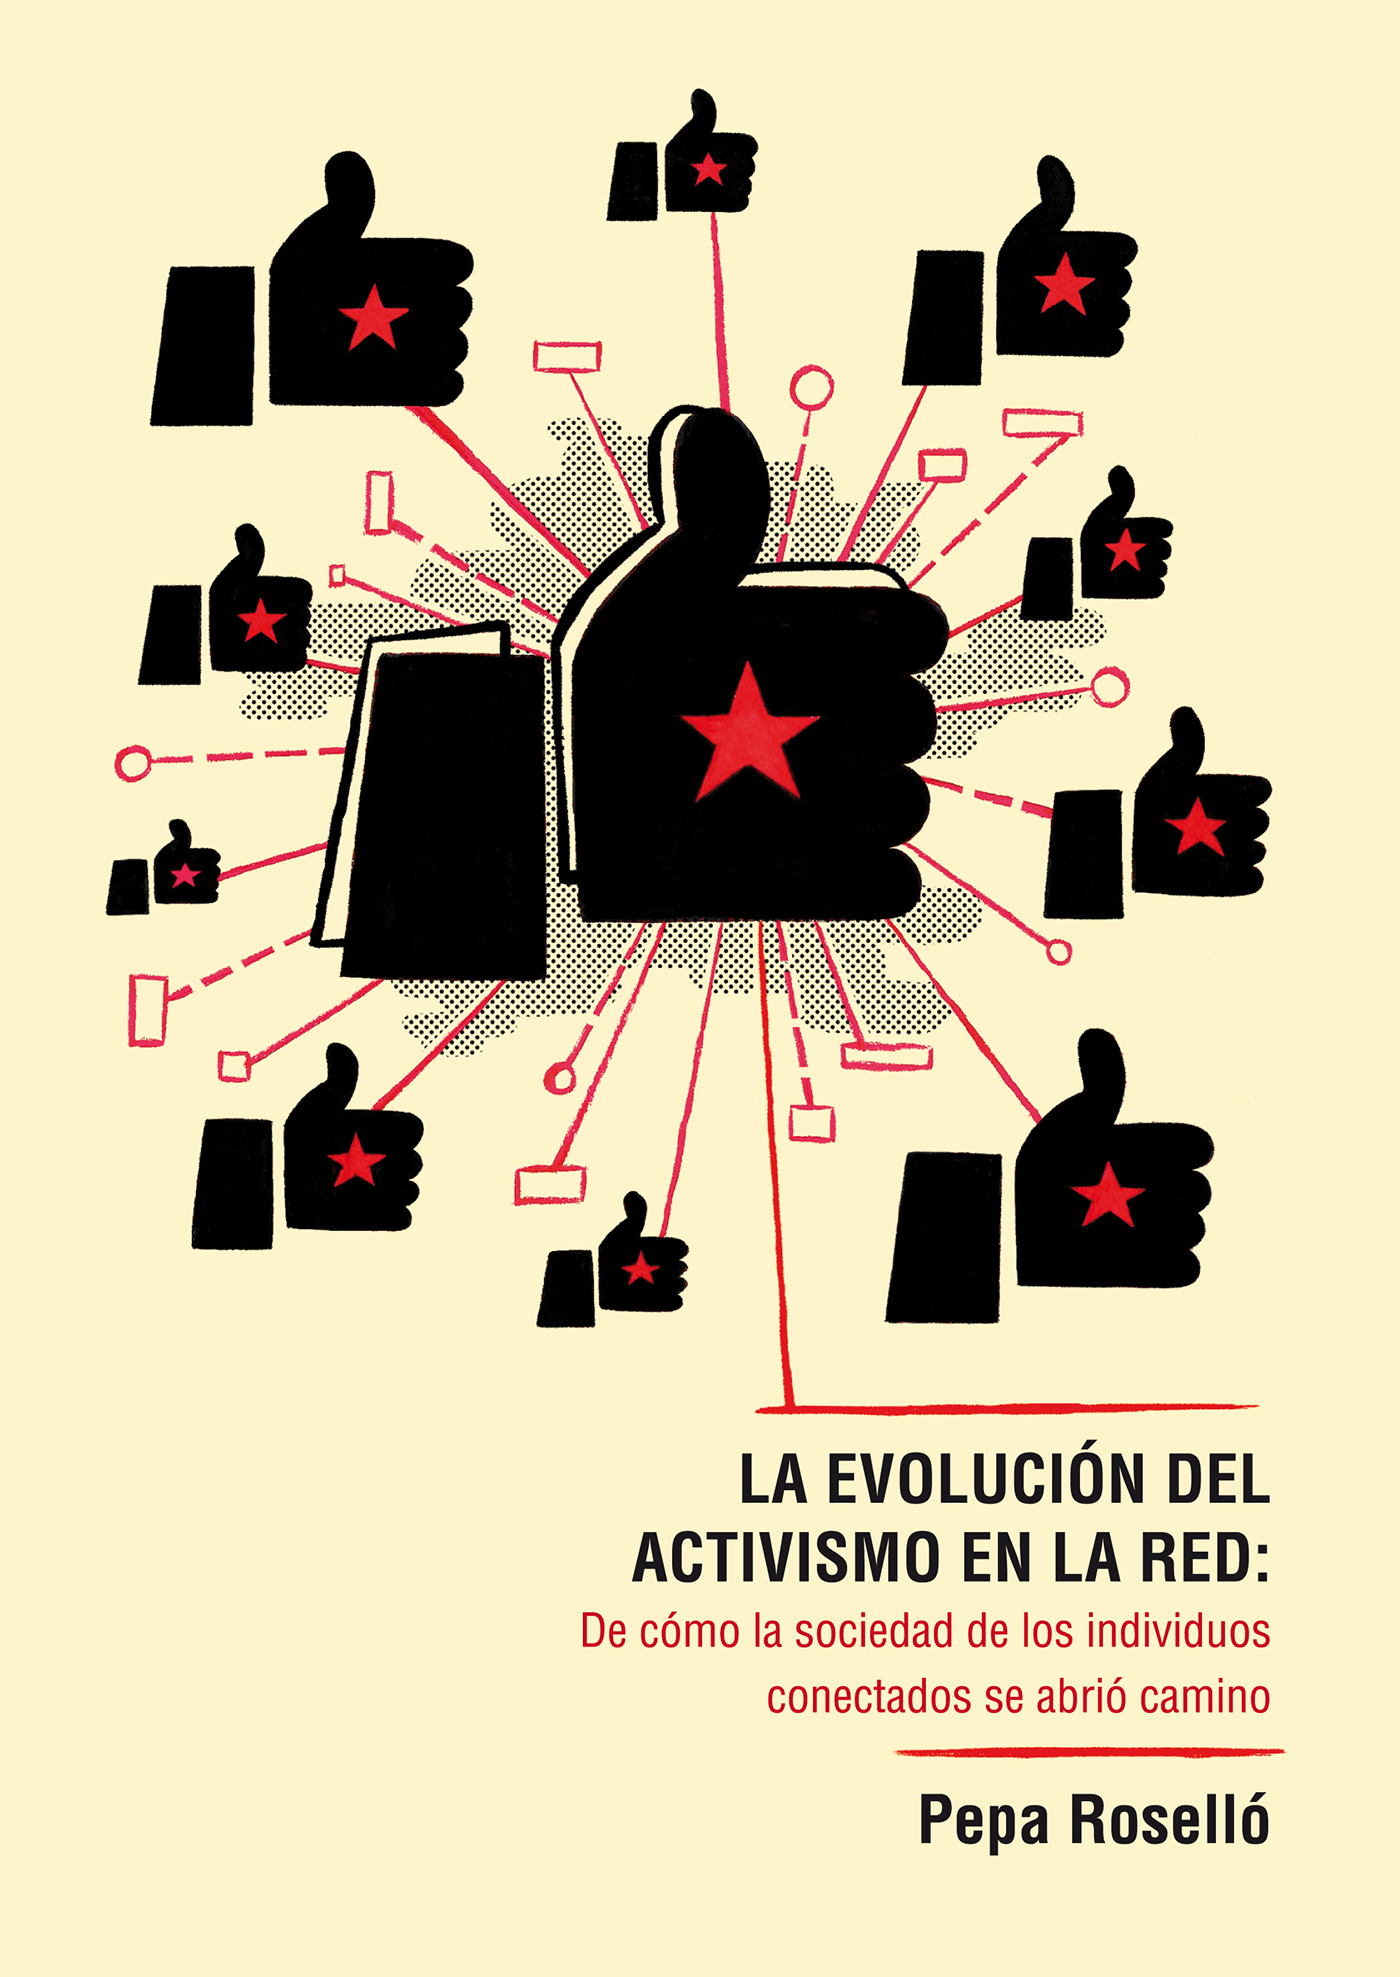 activismo red activism hacktivism 15M zapatism socialnetwork pepa rosello compromiso social luisarmandvillalba